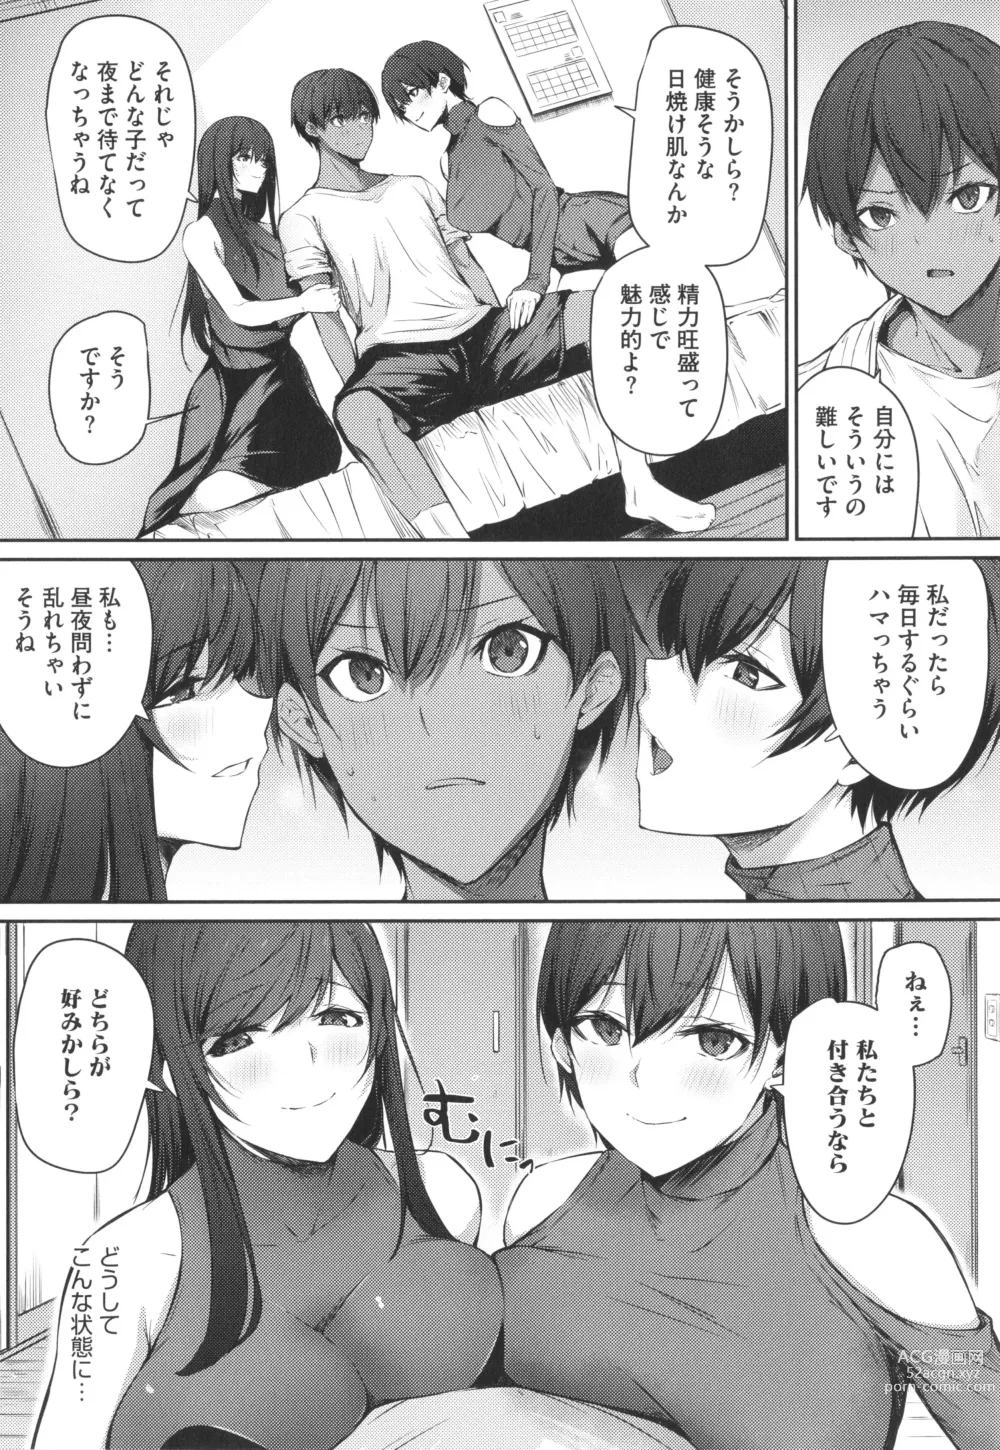 Page 7 of manga Karada Awase